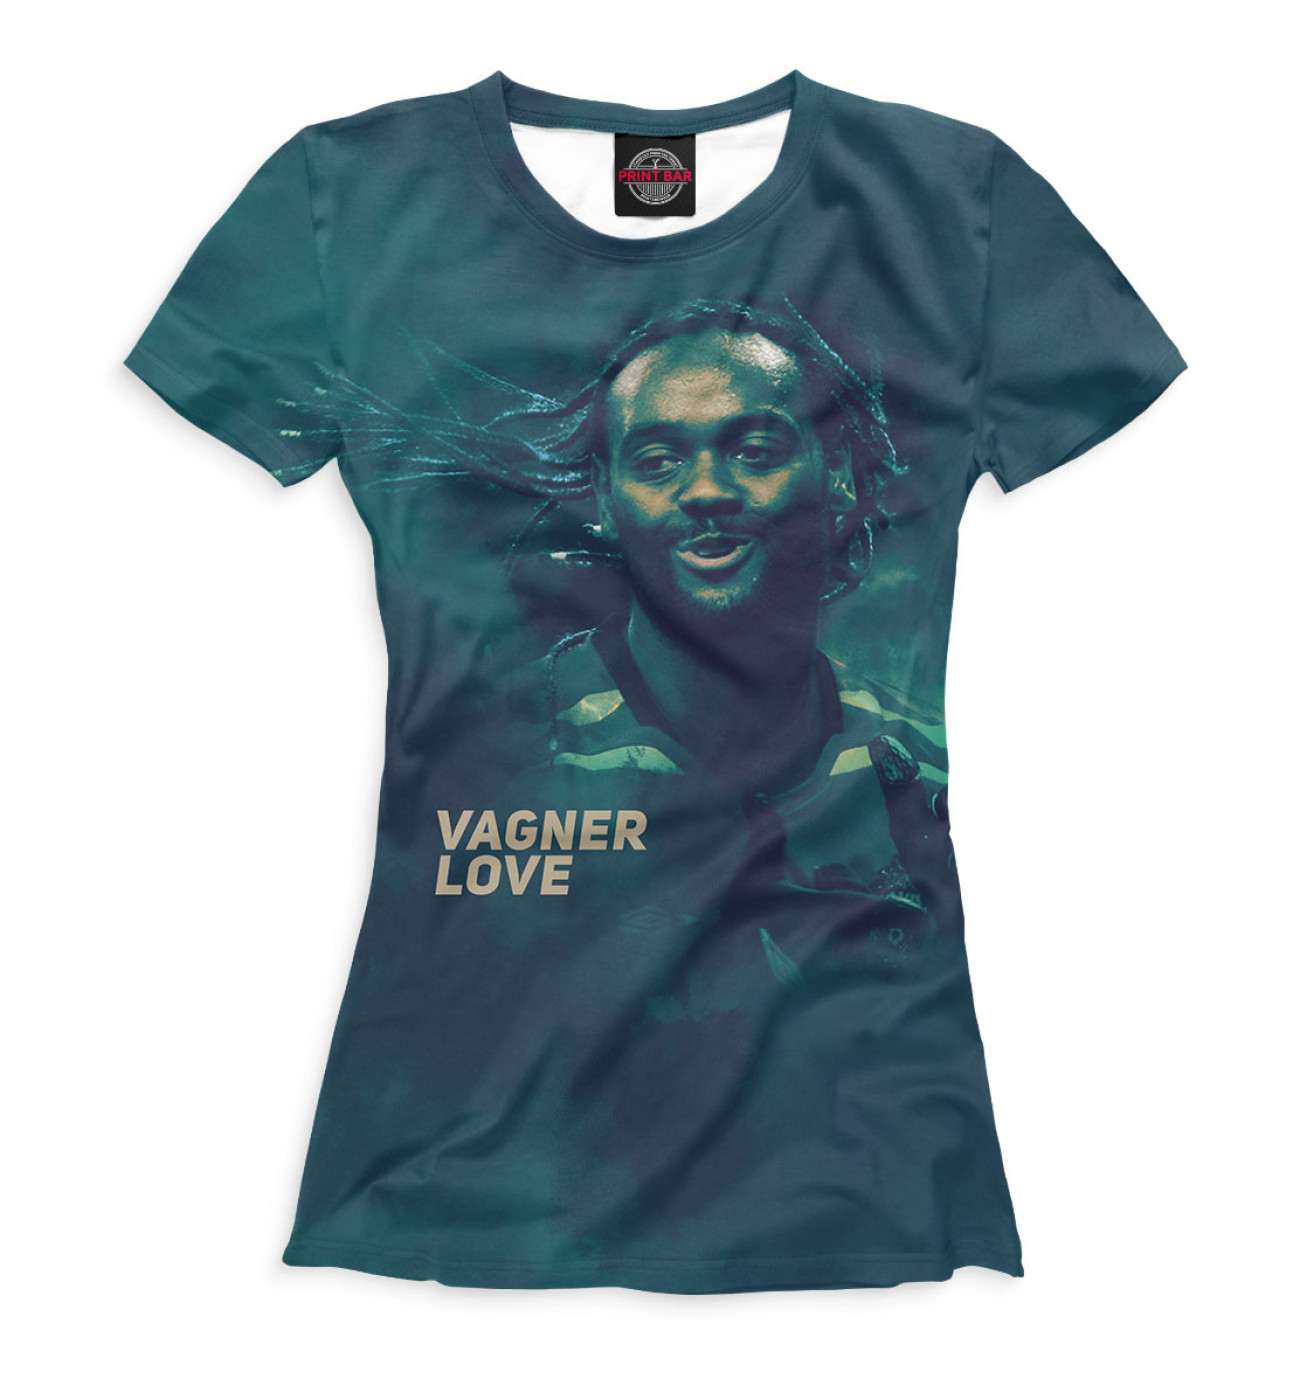 Купить футболку вагнер. Футболки джамбо Вагнер. Вагнер лав футболка. Футболки с принтом Вагнера. Майки с принтом Вагнер.